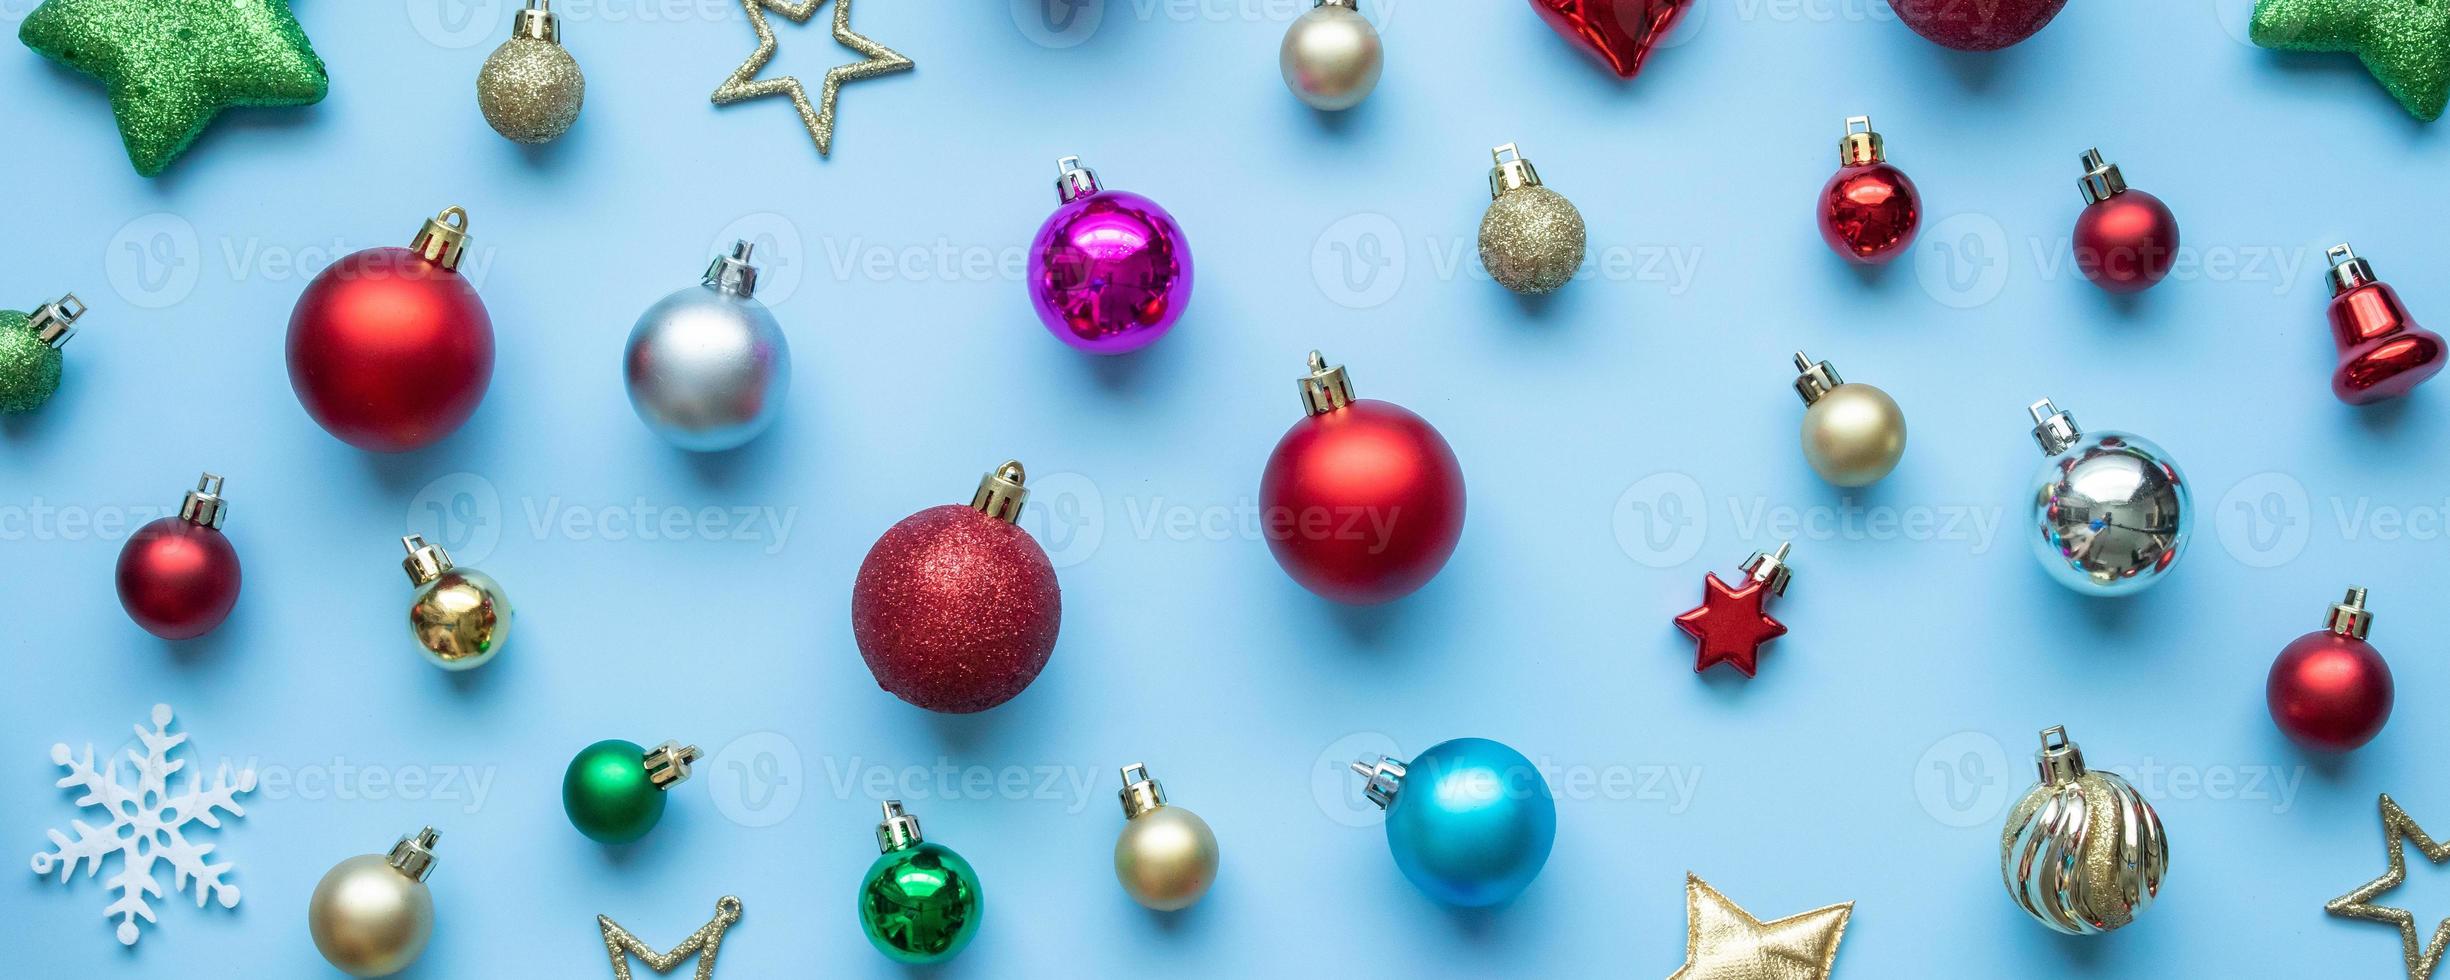 jul boll struntsak mönster minimal flatlay på blå pastell bakgrund topp se foto